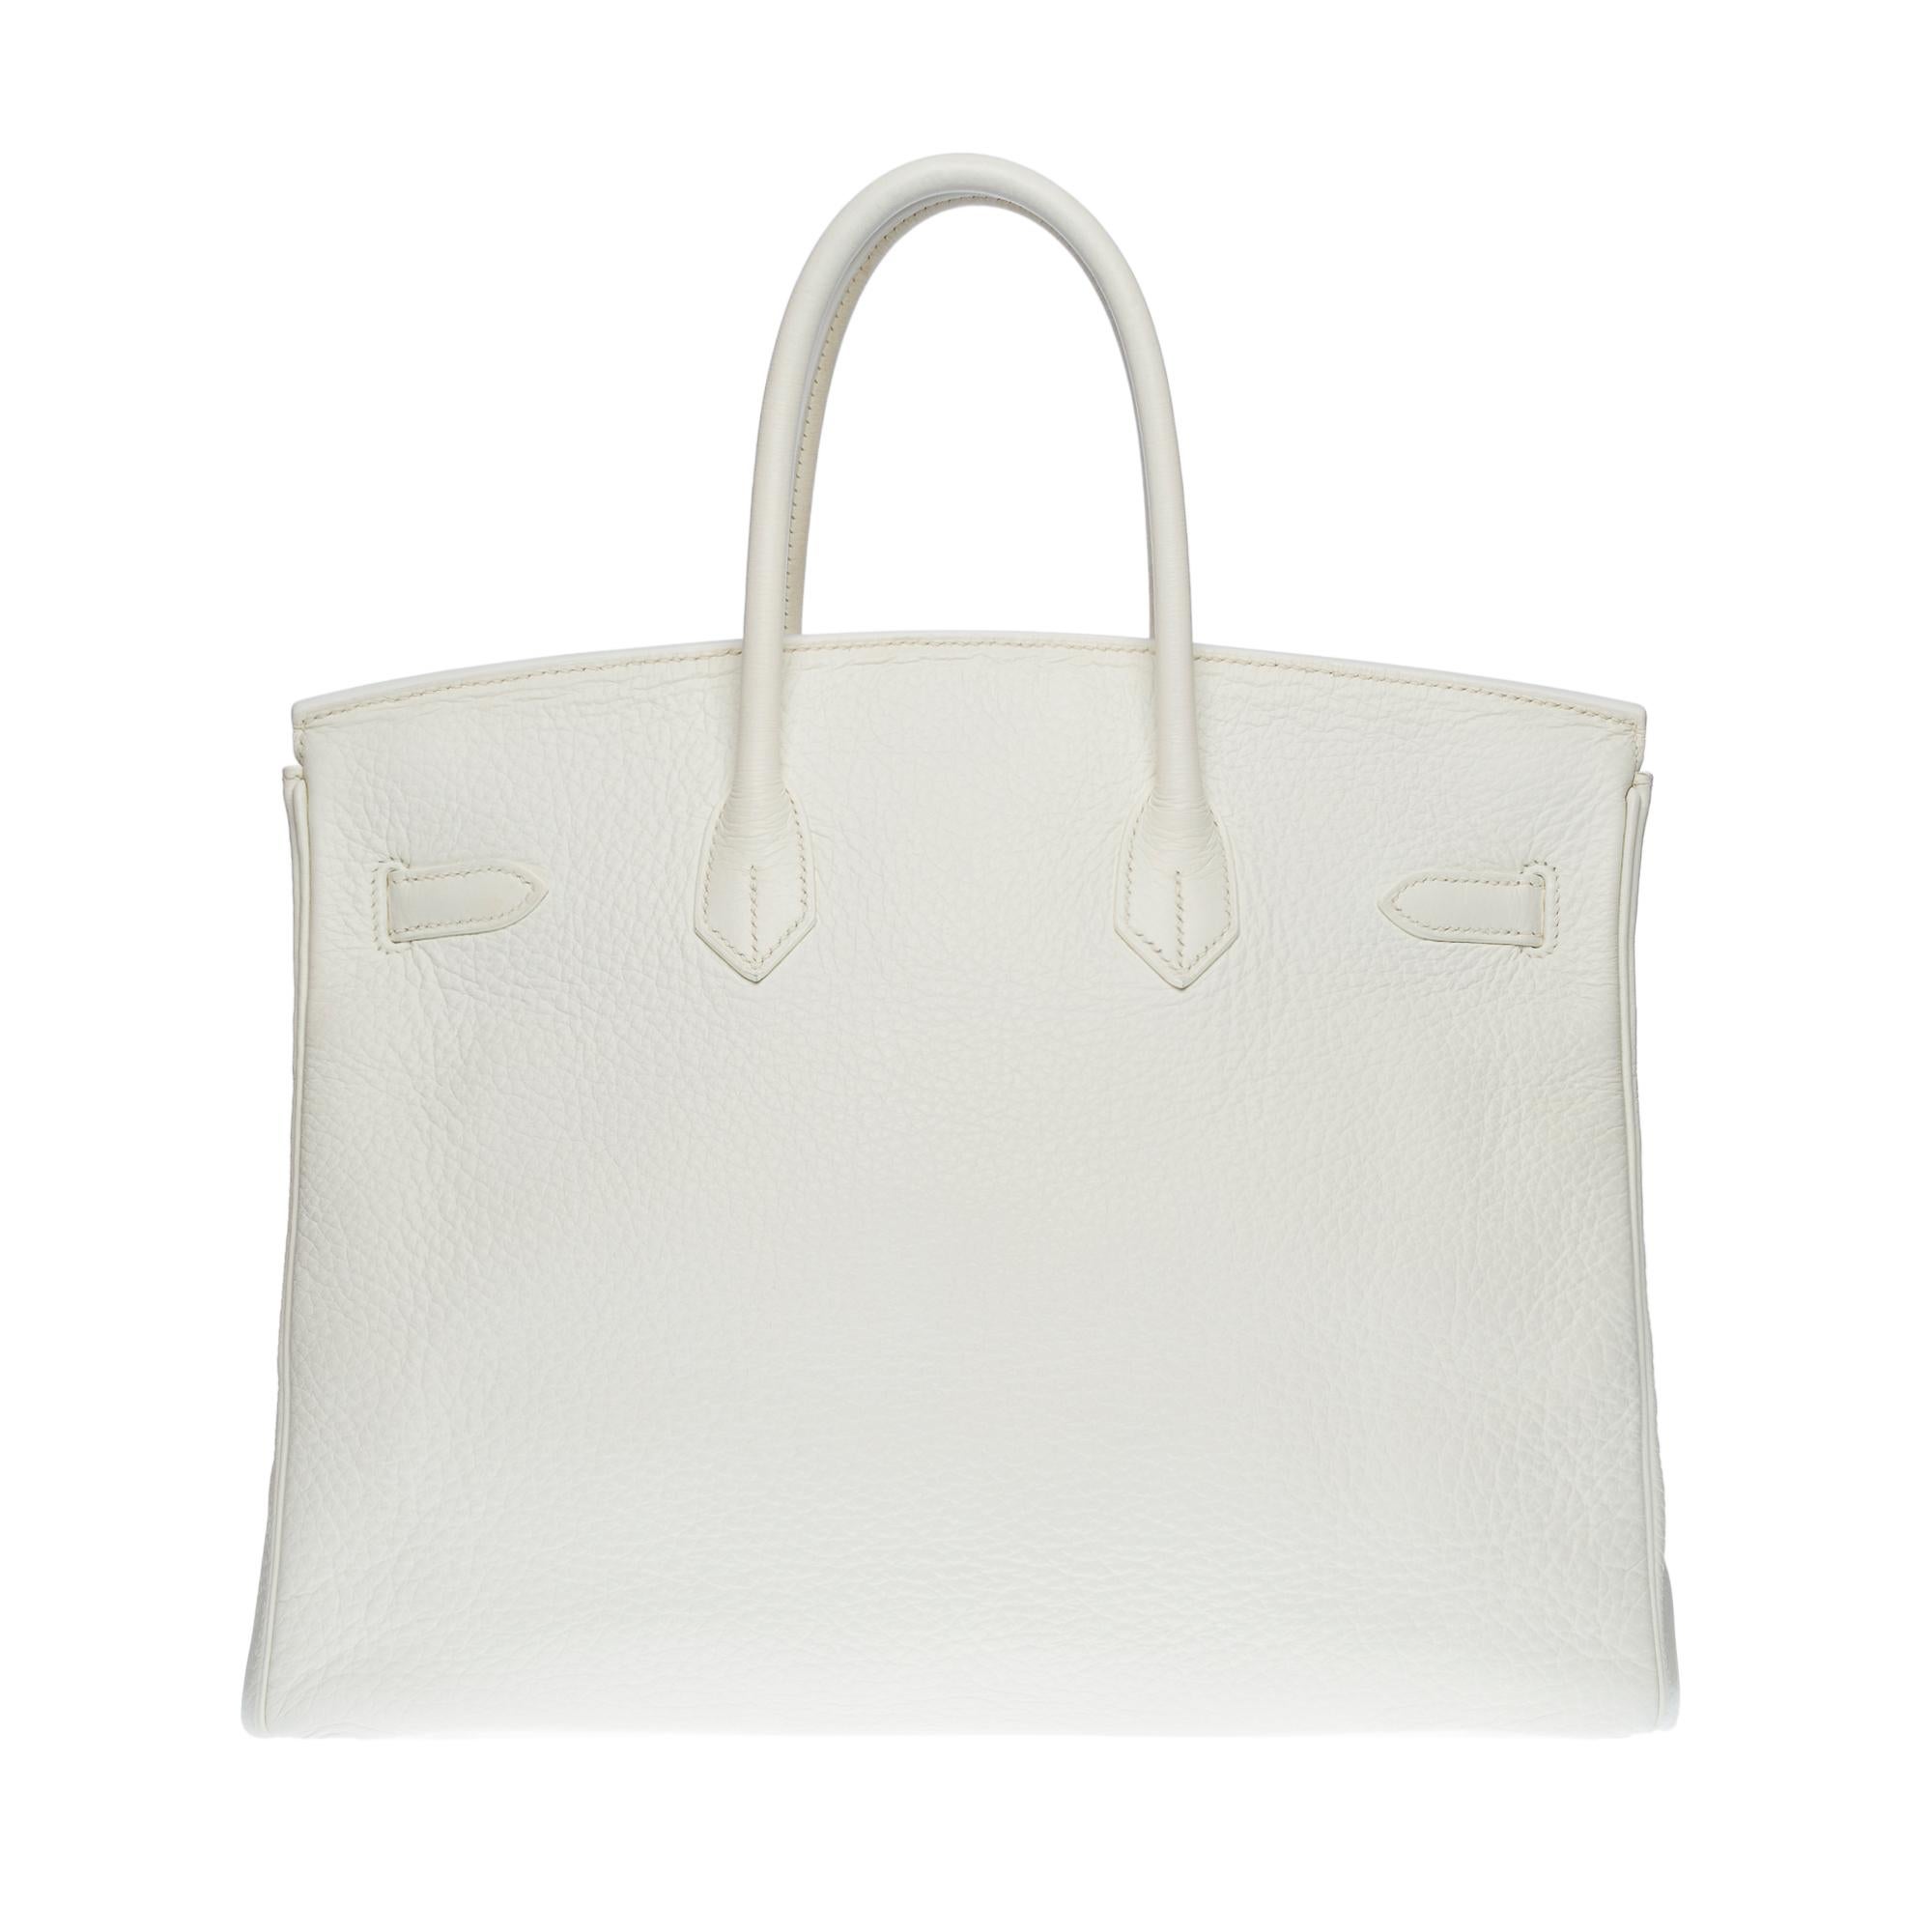 Stunning Hermès Birkin 35 handbag in white Togo leather, SHW In Good Condition In Paris, IDF